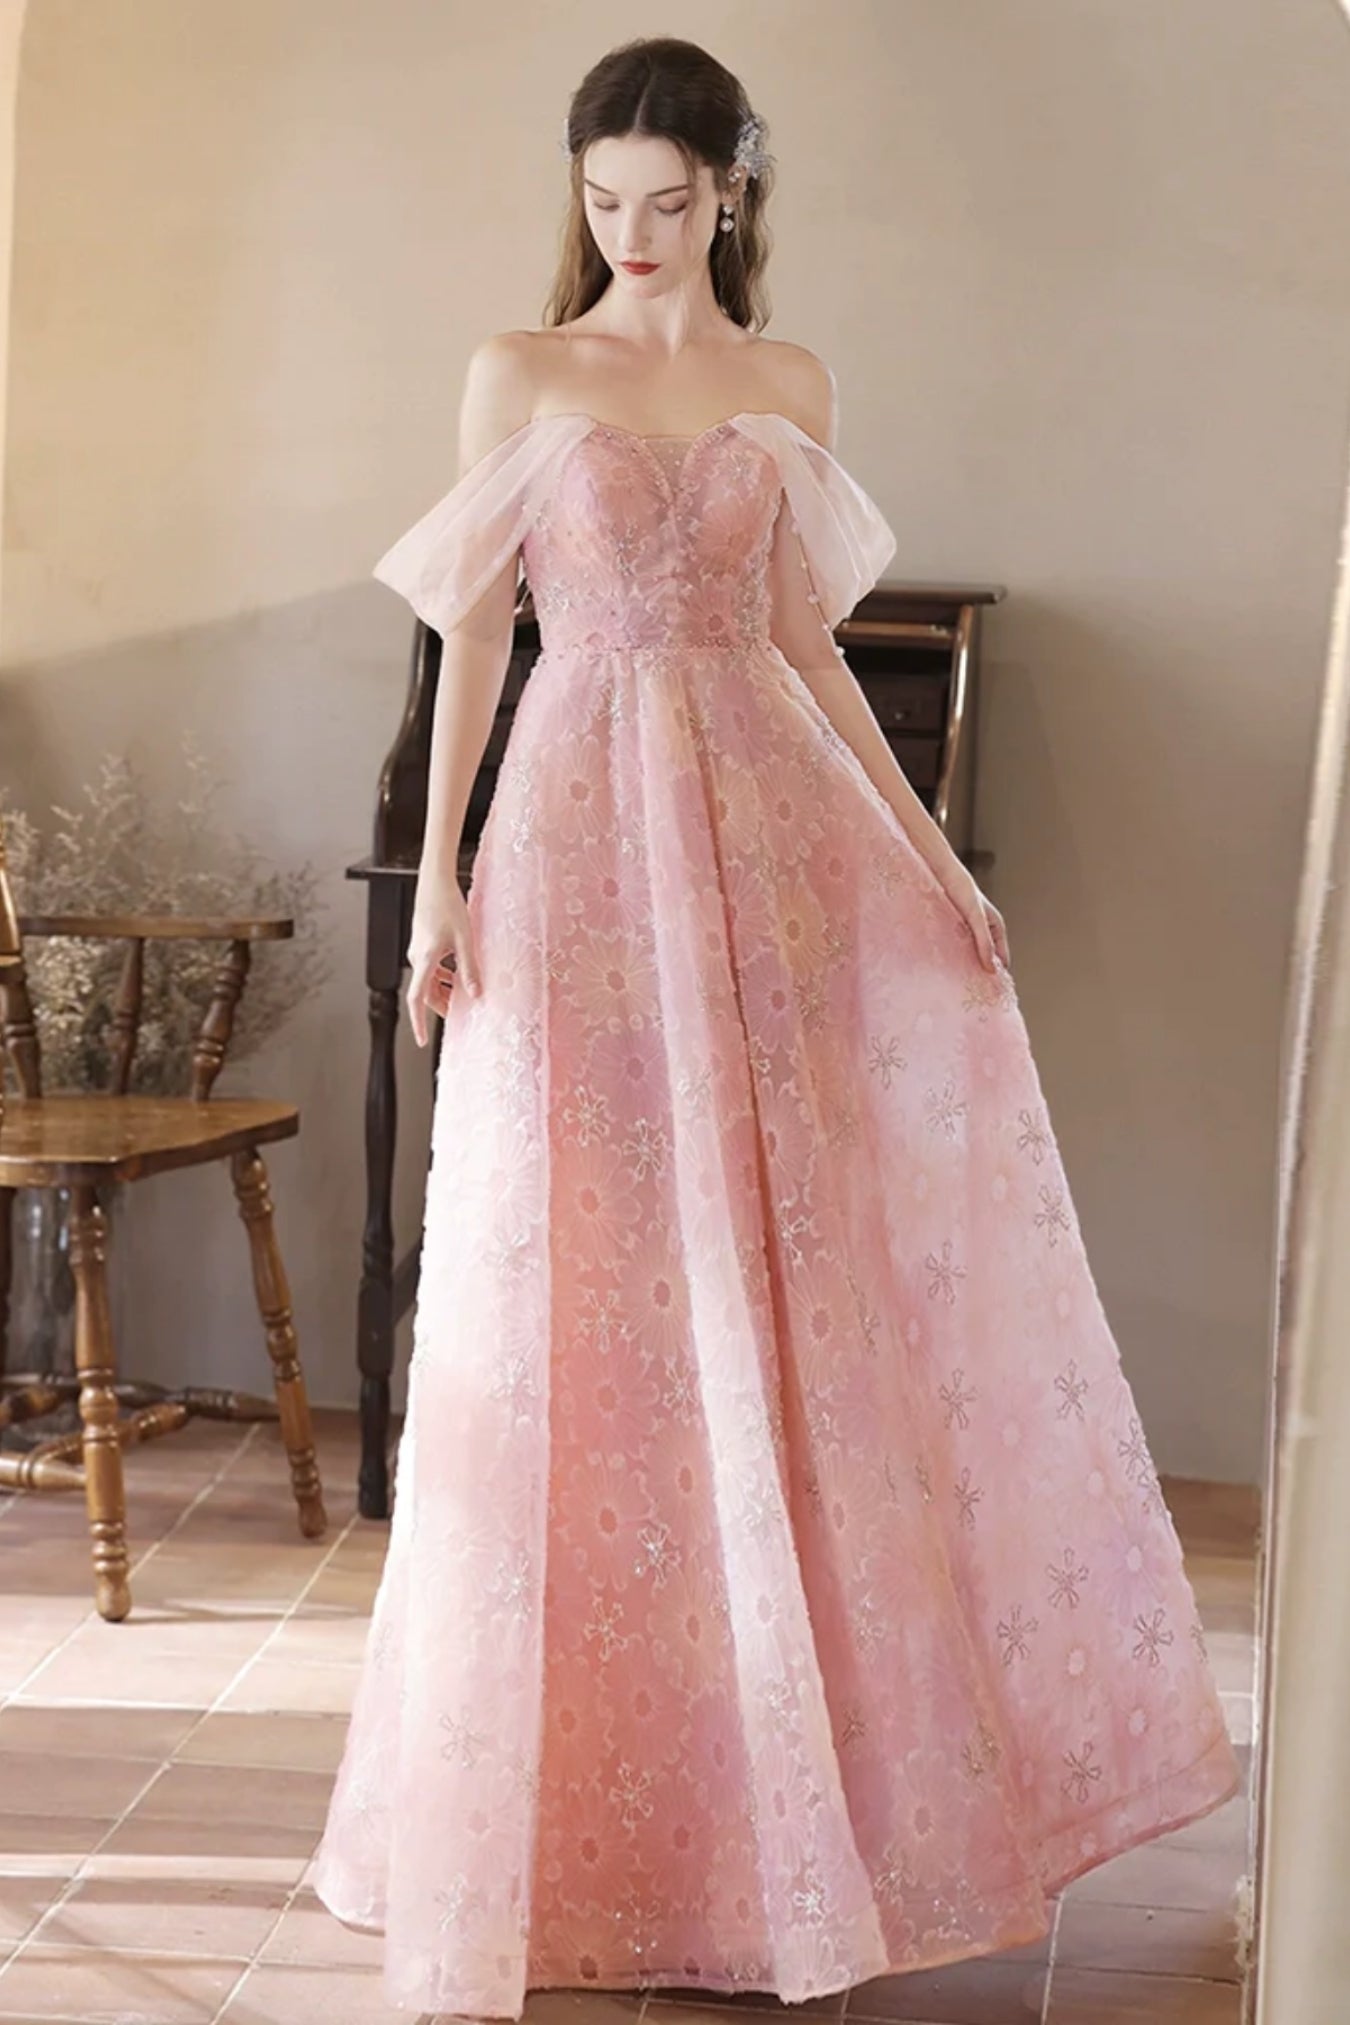 Pink Off Shoulder Lace Floral Long Prom Dresses, Off the Shoulder Pink Formal Dresses, Pink Lace Evening Dresses WT1376